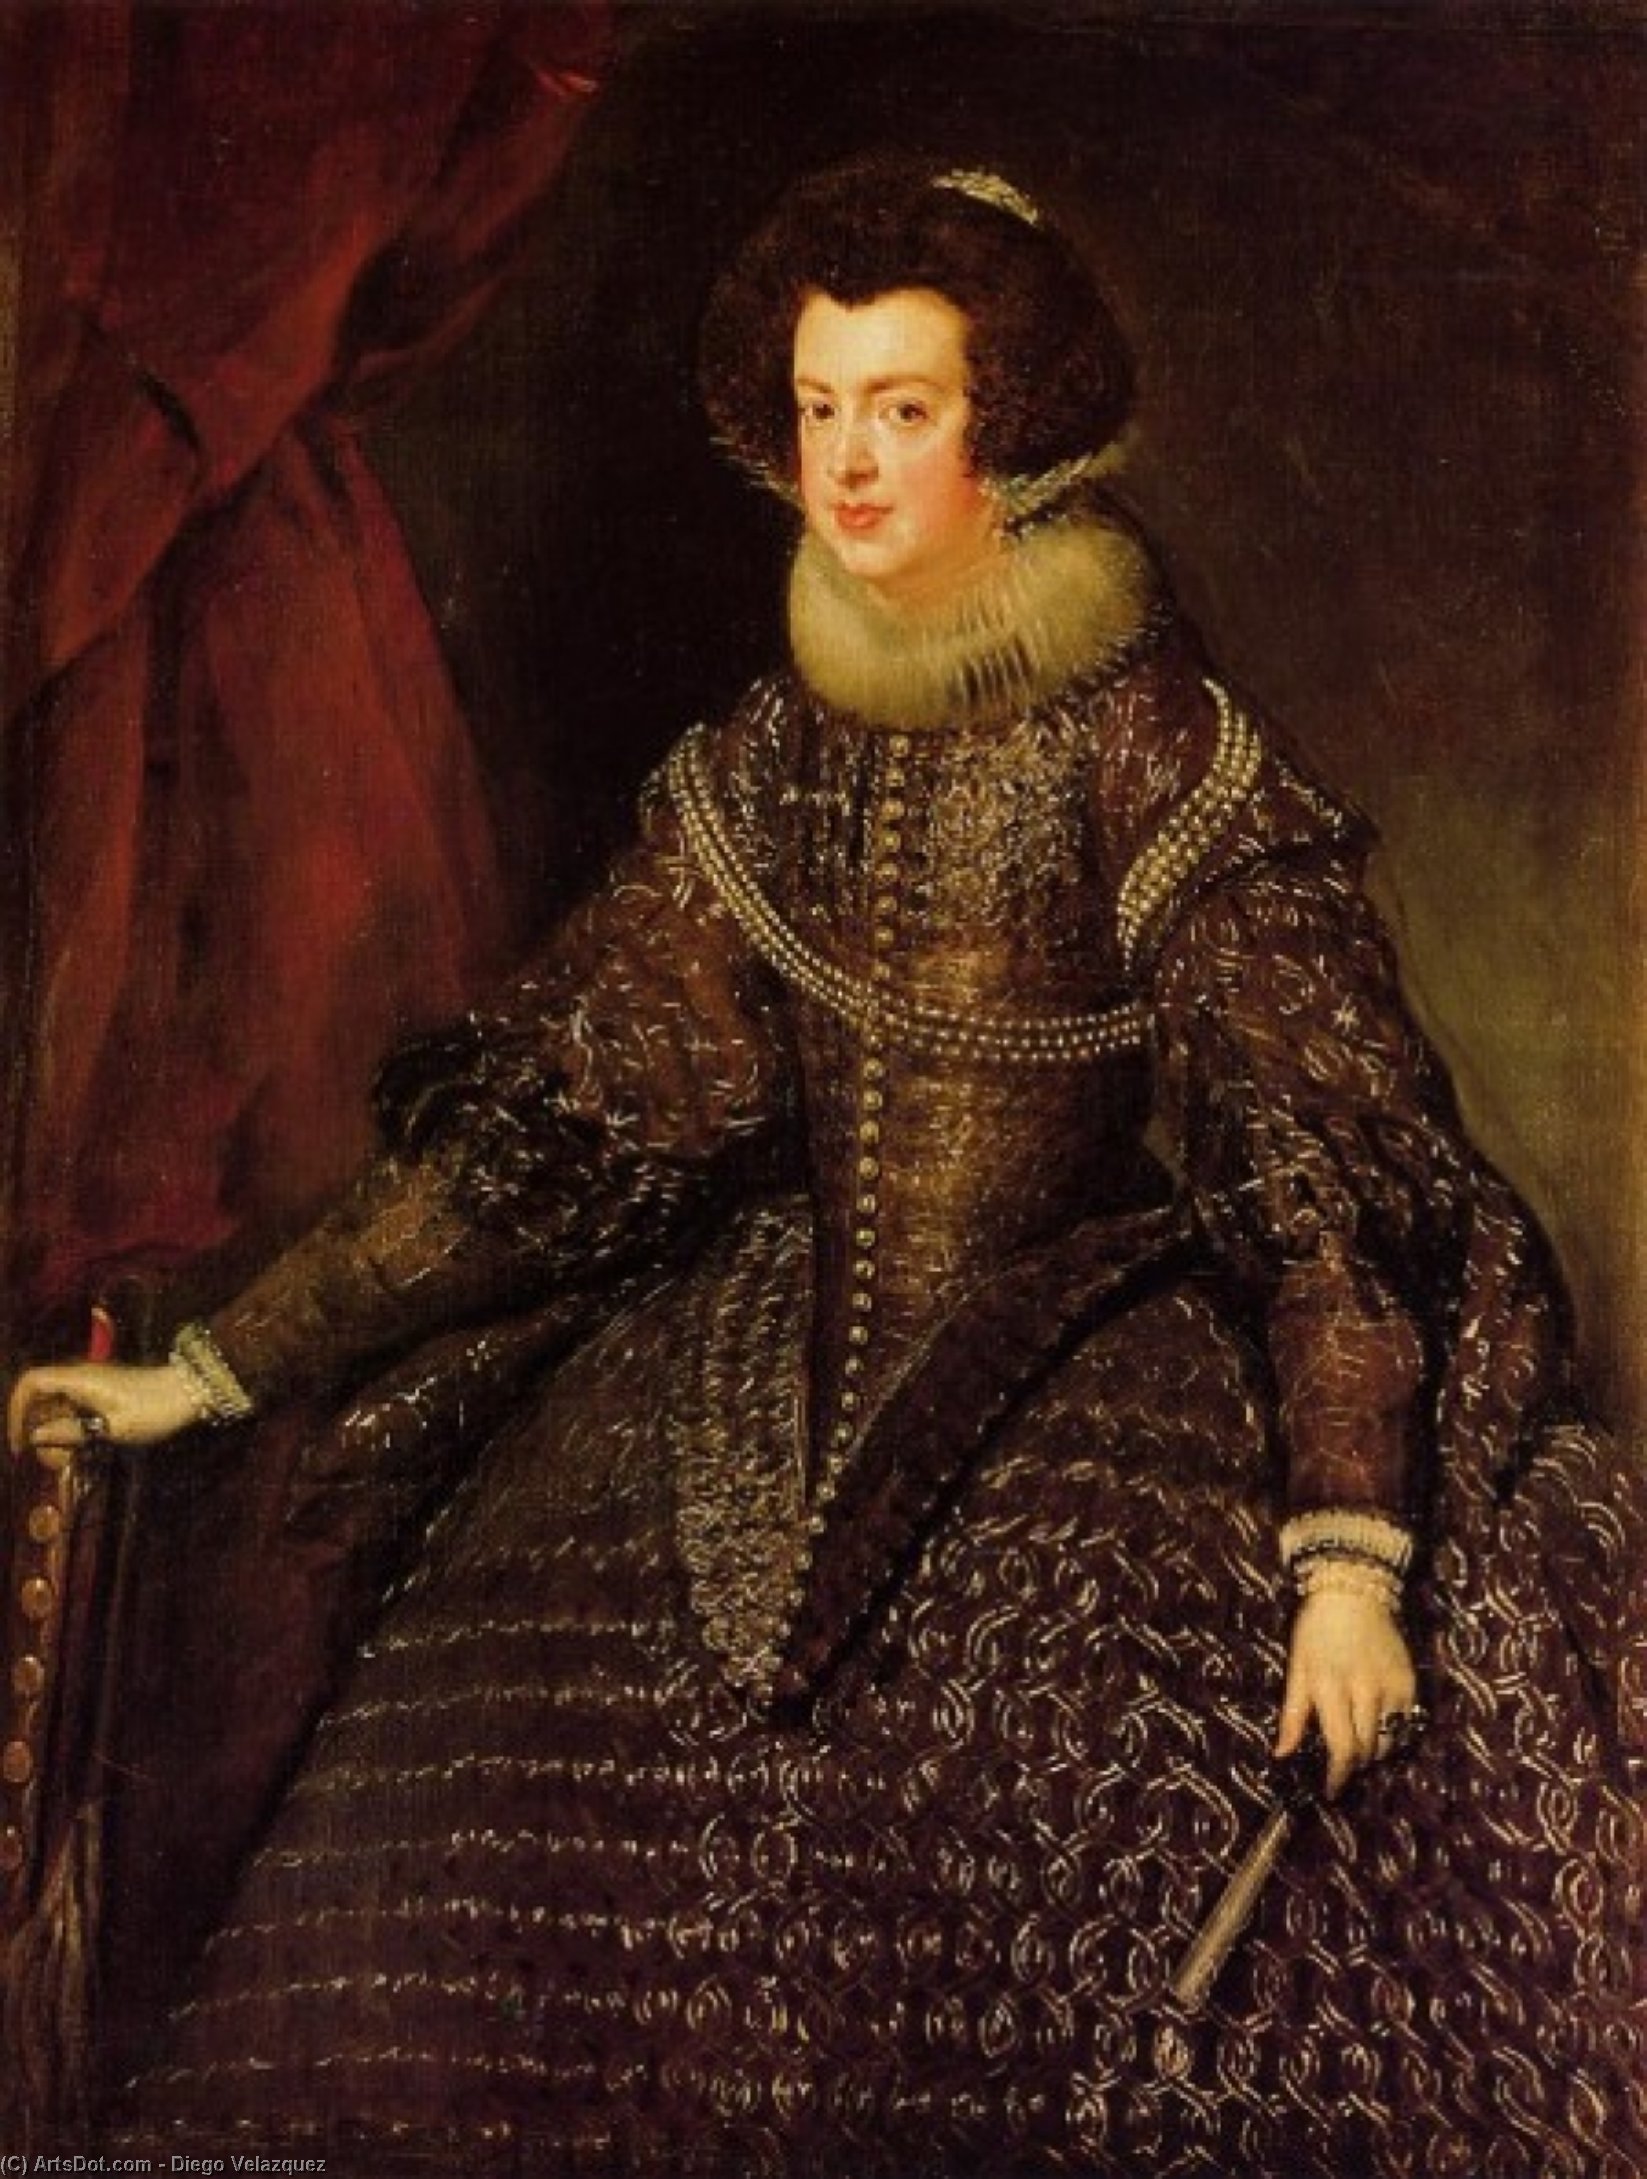 WikiOO.org - Enciclopédia das Belas Artes - Pintura, Arte por Diego Velazquez - Queen Isabella of Spain wife of Philip IV